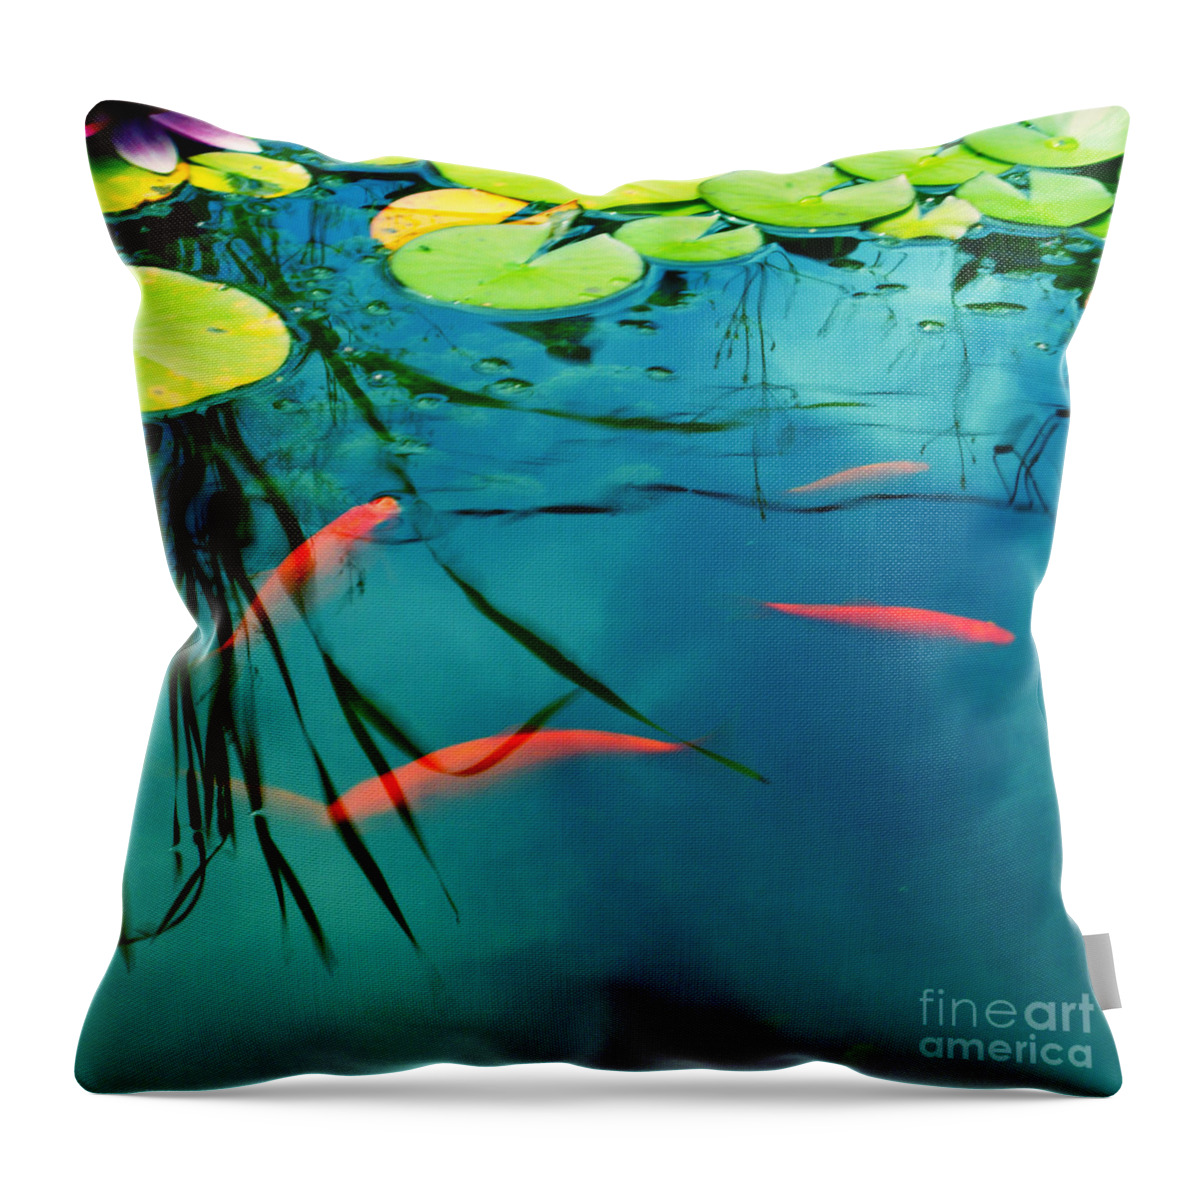 Fish Throw Pillow featuring the photograph Plaisir Aquatique by Aimelle Ml